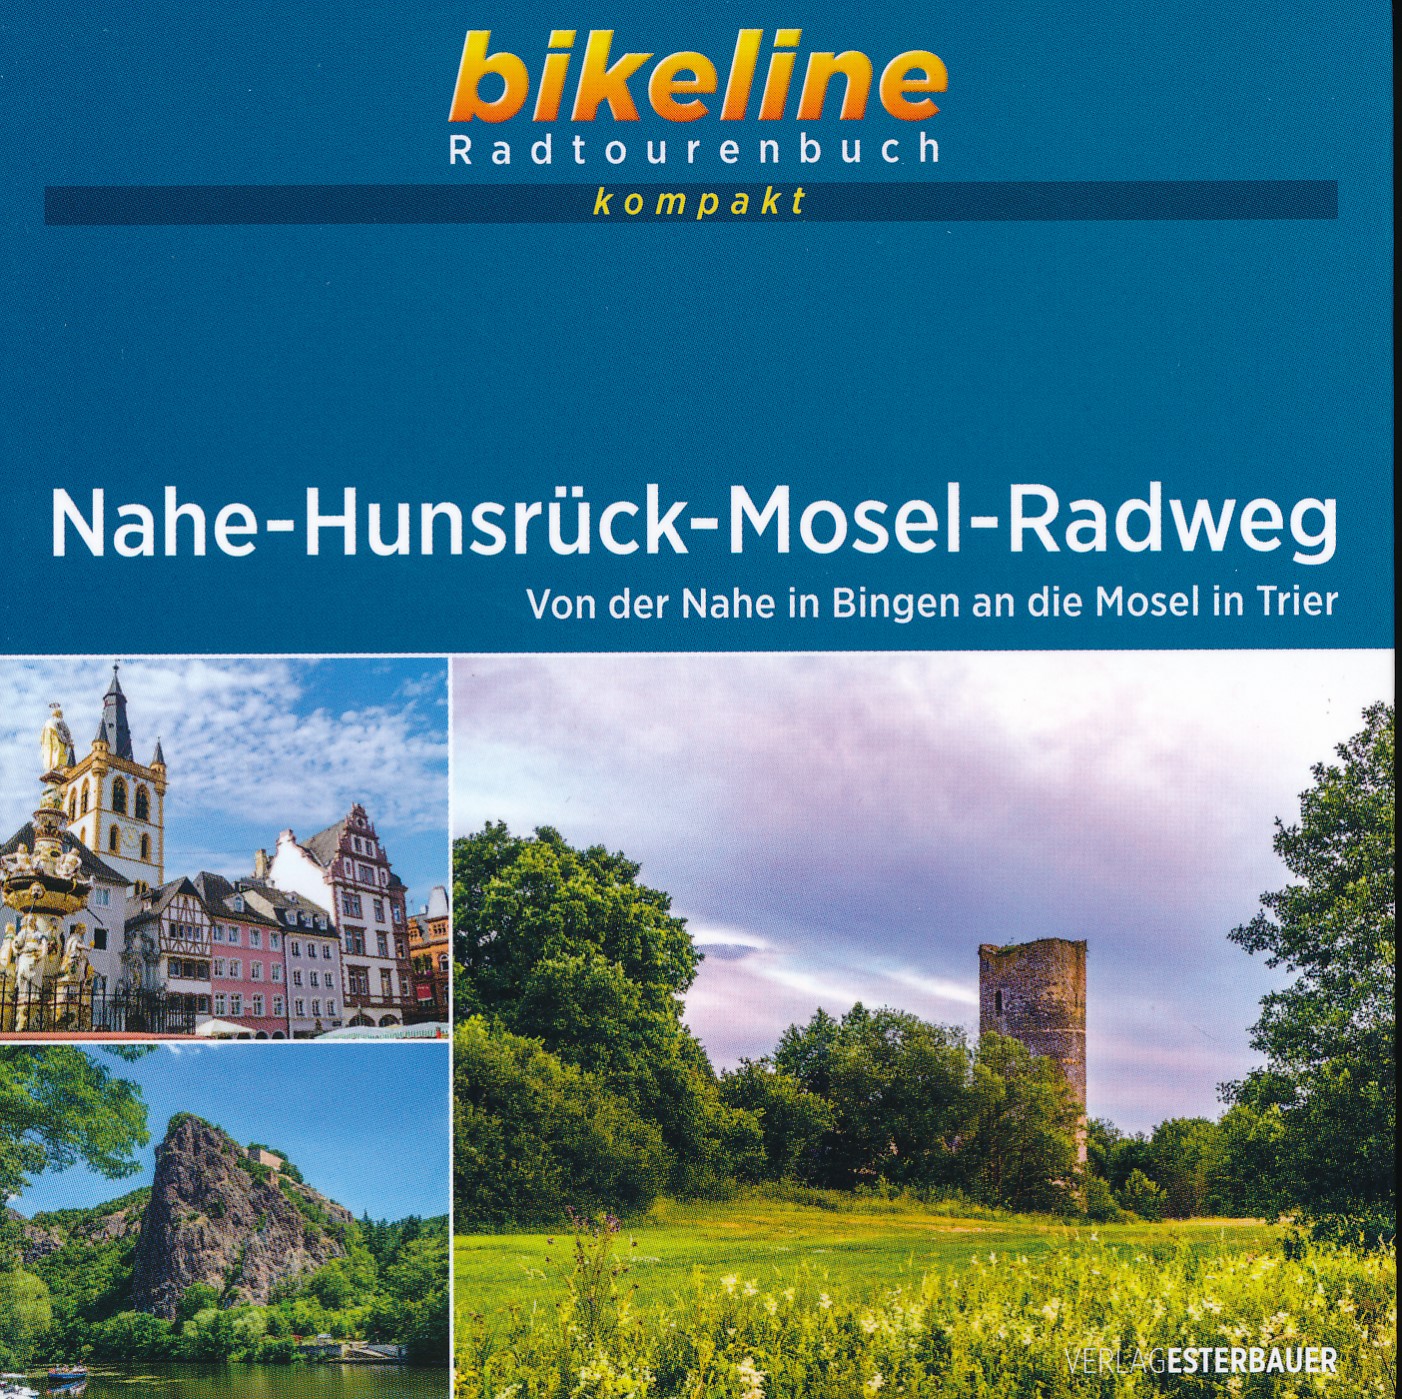 Online bestellen: Fietsgids Bikeline Radtourenbuch kompakt Nahe - Hunsrück - Mosel - Radweg | Esterbauer